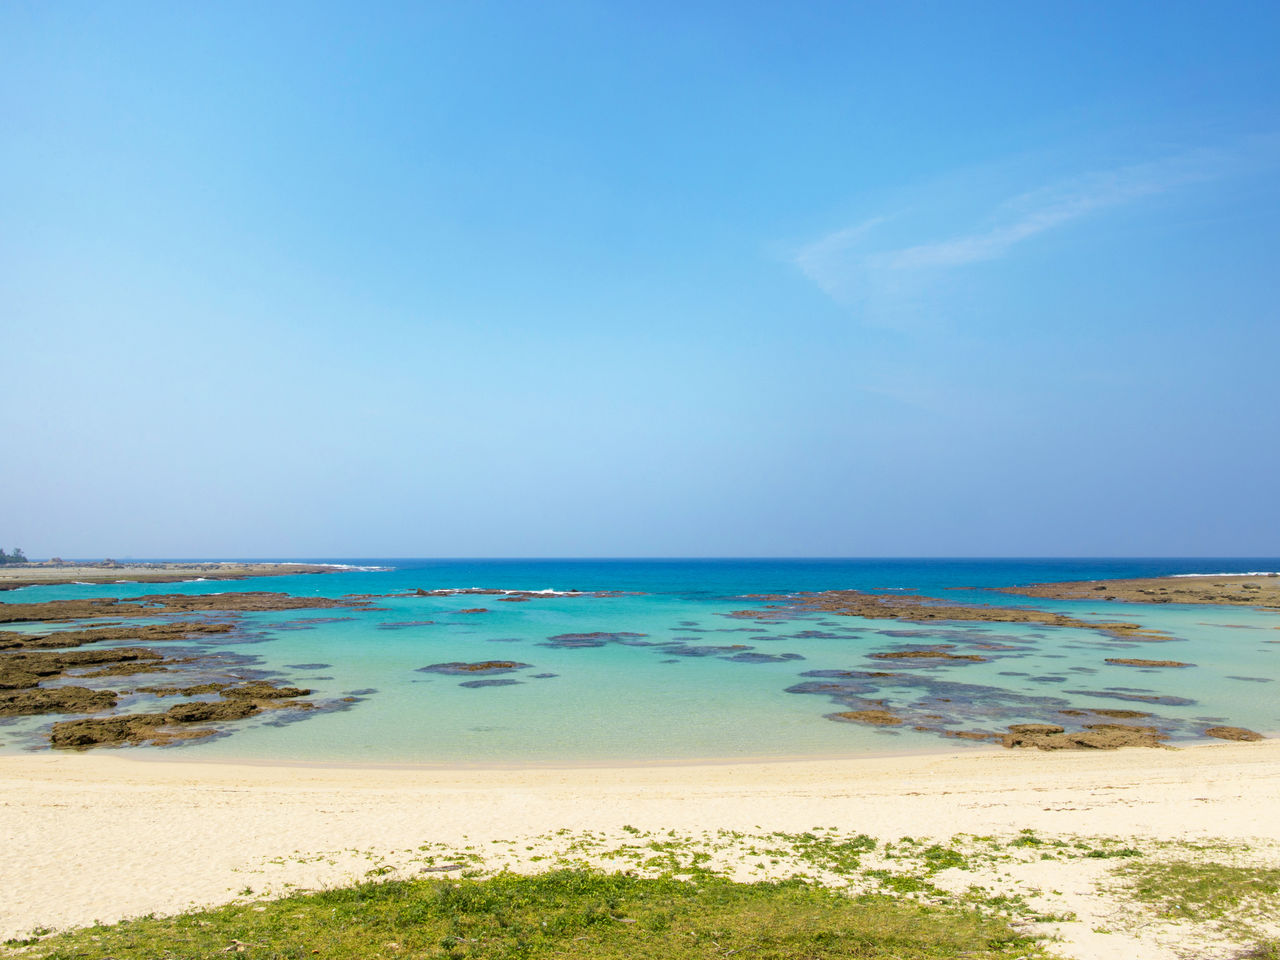 La playa de Tomori también es conocida como “Blue Angel” por los hermosos tonos azules de sus aguas.